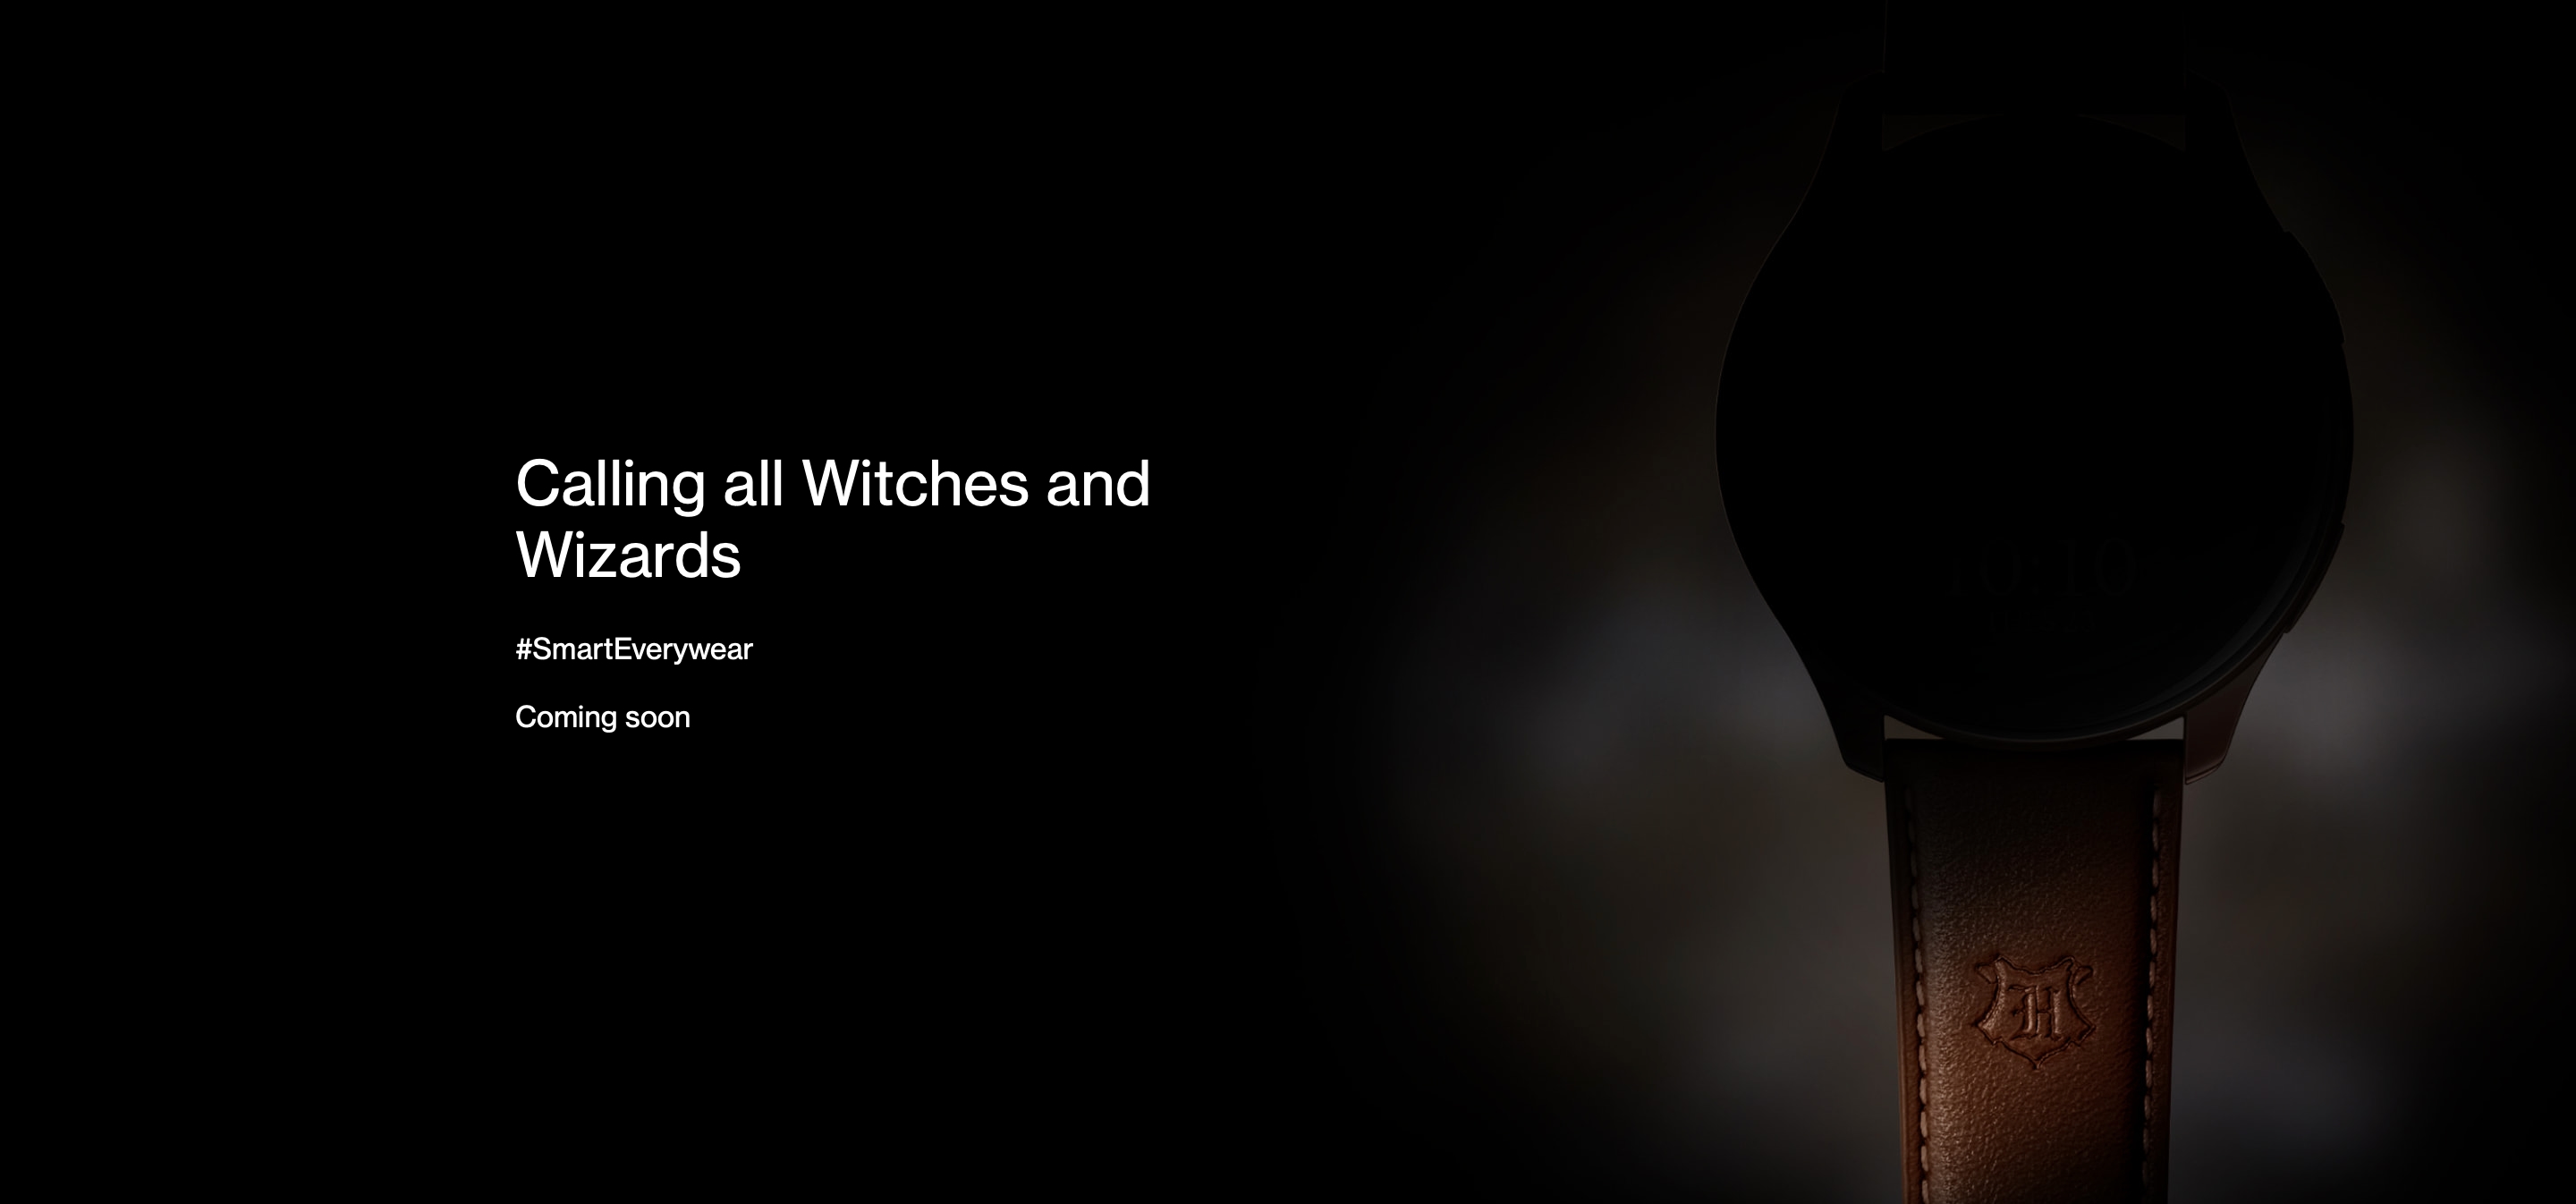 Ankündigung steht kurz bevor: OnePlus stellt die Smartwatch OnePlus Watch Harry Potter Edition vor